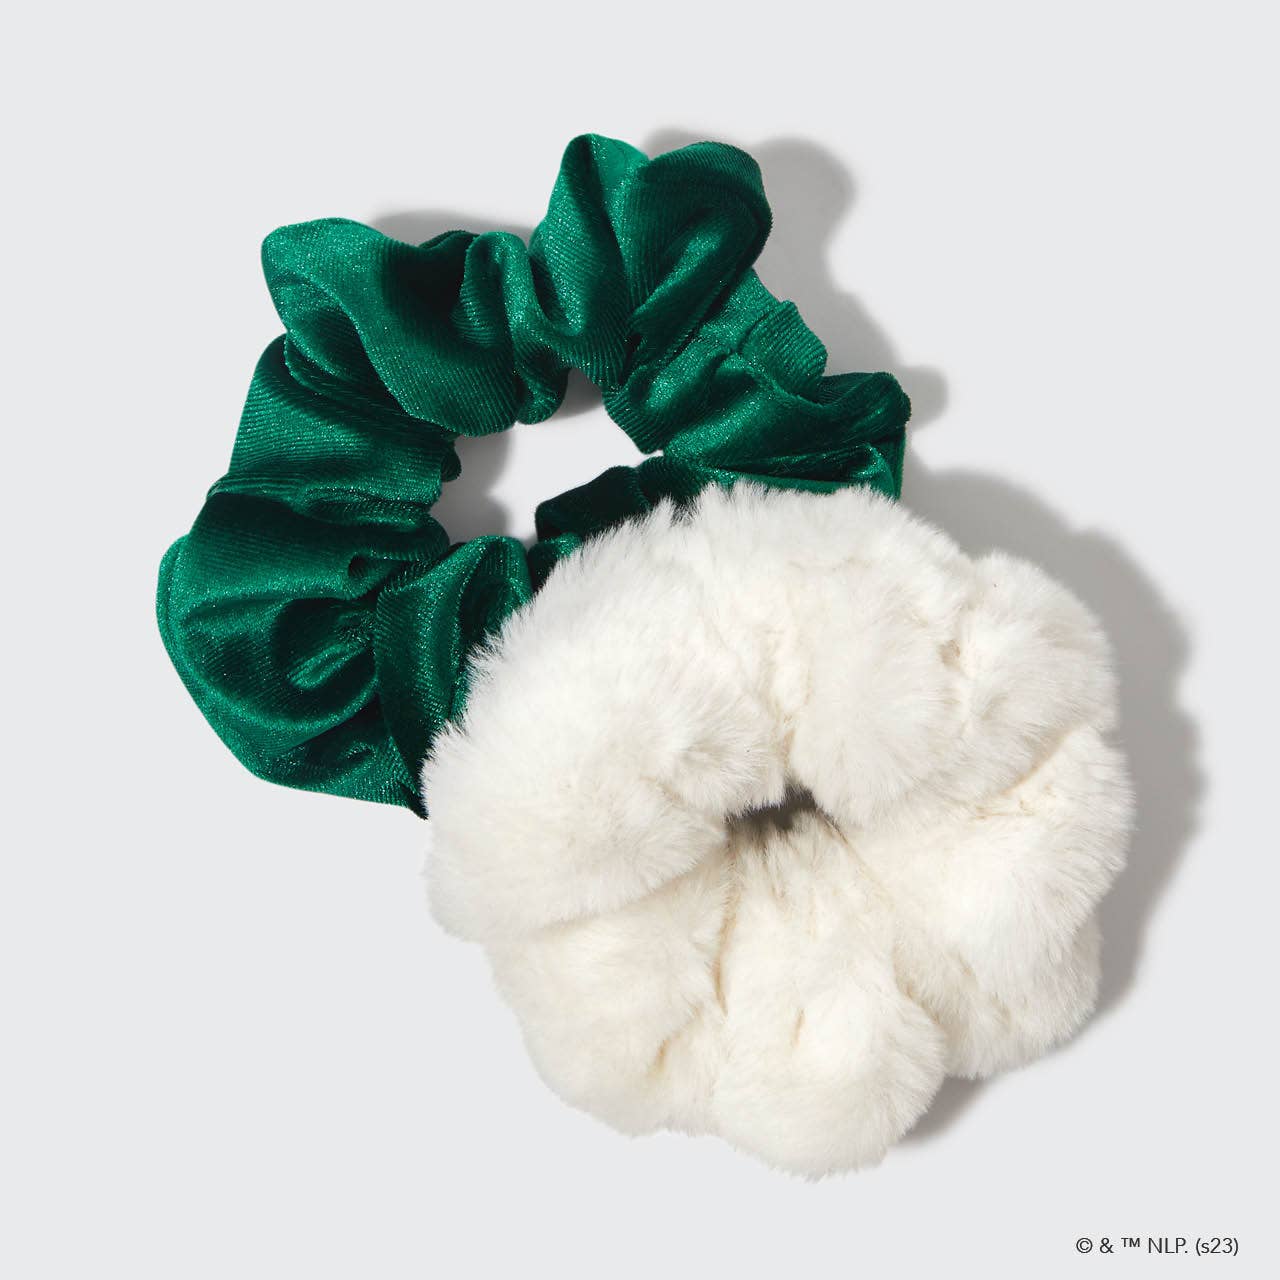 SALE KITSCH Elf X Kitsch Scrunchies 2pc - White & Green